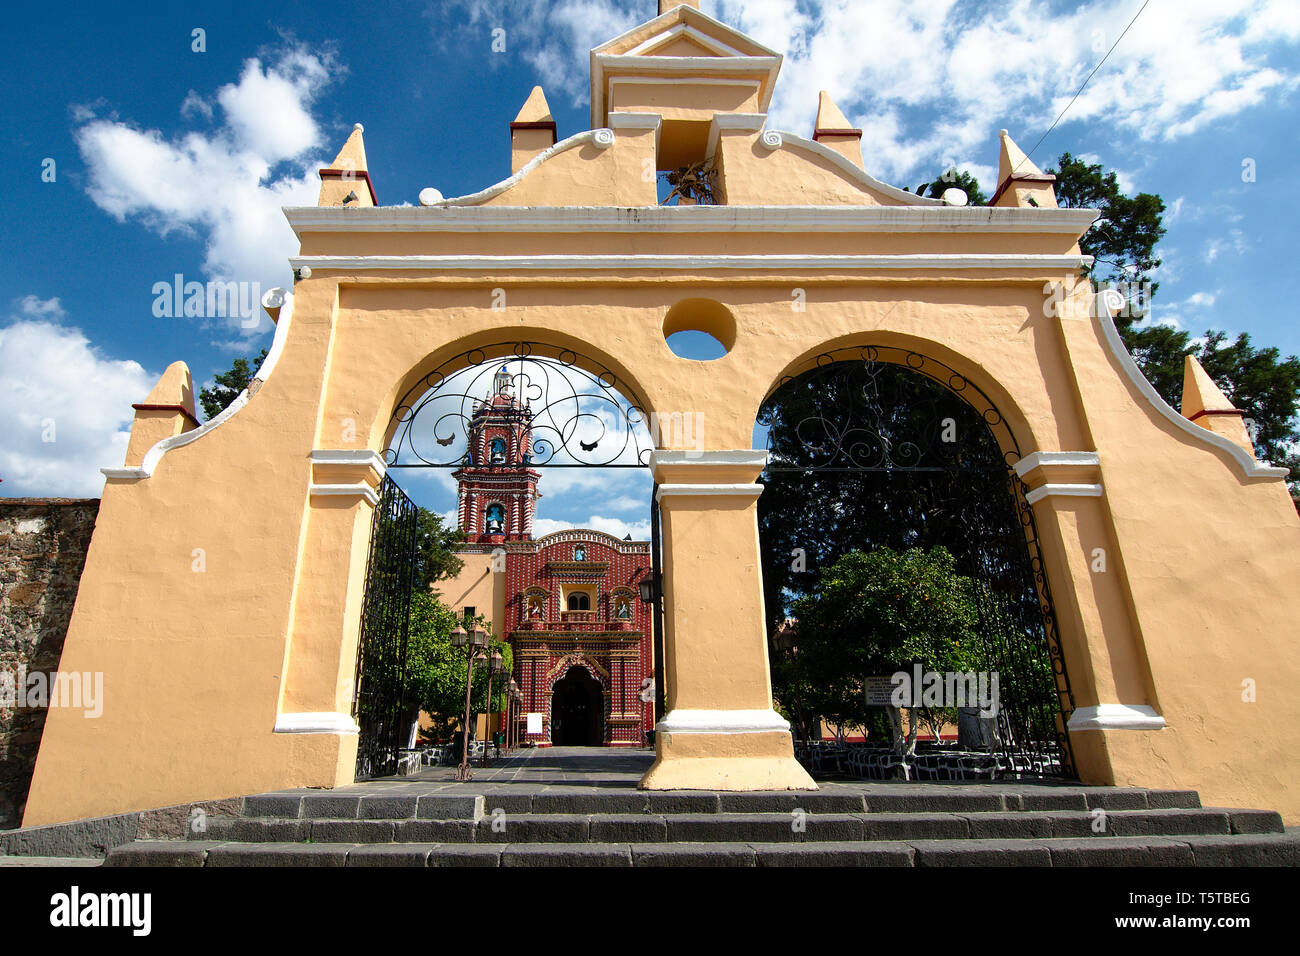 Cholula, Puebla, Mexique - 2019 : Entrée de l'église Santa María Tonantzintla, l'une des nombreuses églises pour lesquelles cette ville est célèbre. Banque D'Images